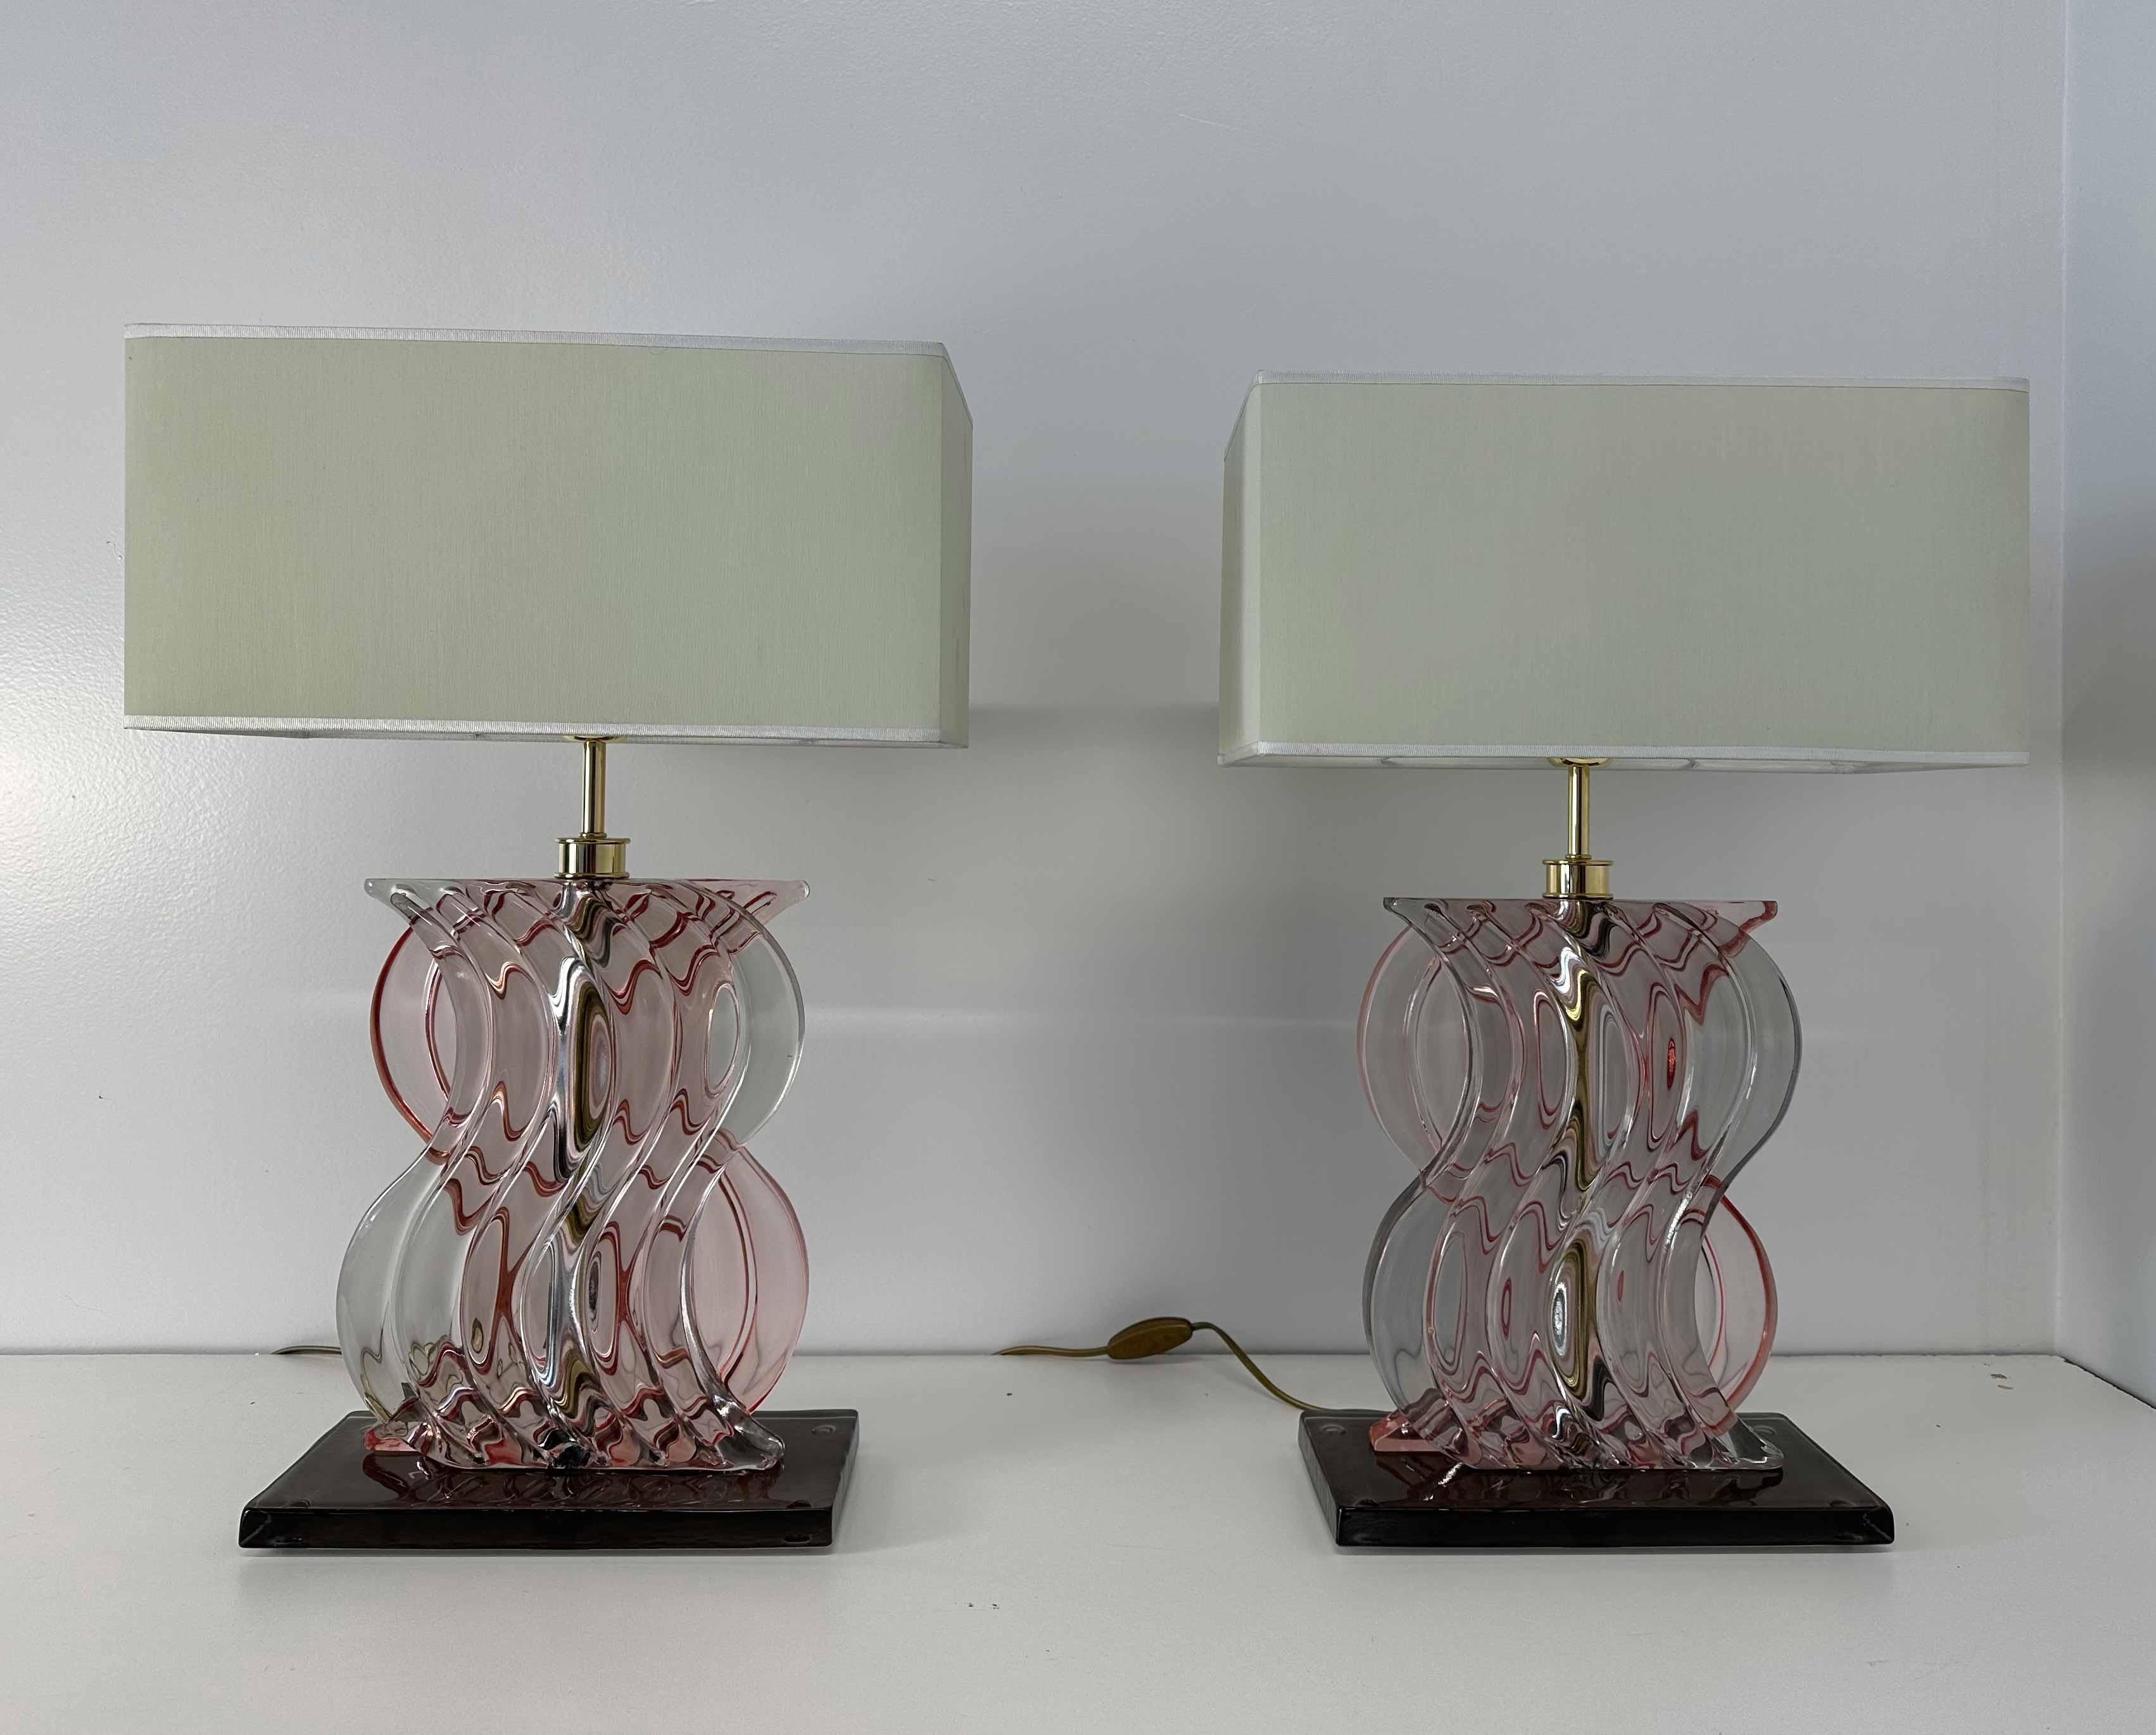 Cette paire de lampes de style Art déco a été produite en Italie dans les années 2000. 
La partie centrale de la structure est en laiton galvanisé doré, recouvert d'un verre de Murano sinueux rose pastel. La base est une pièce brune en verre de